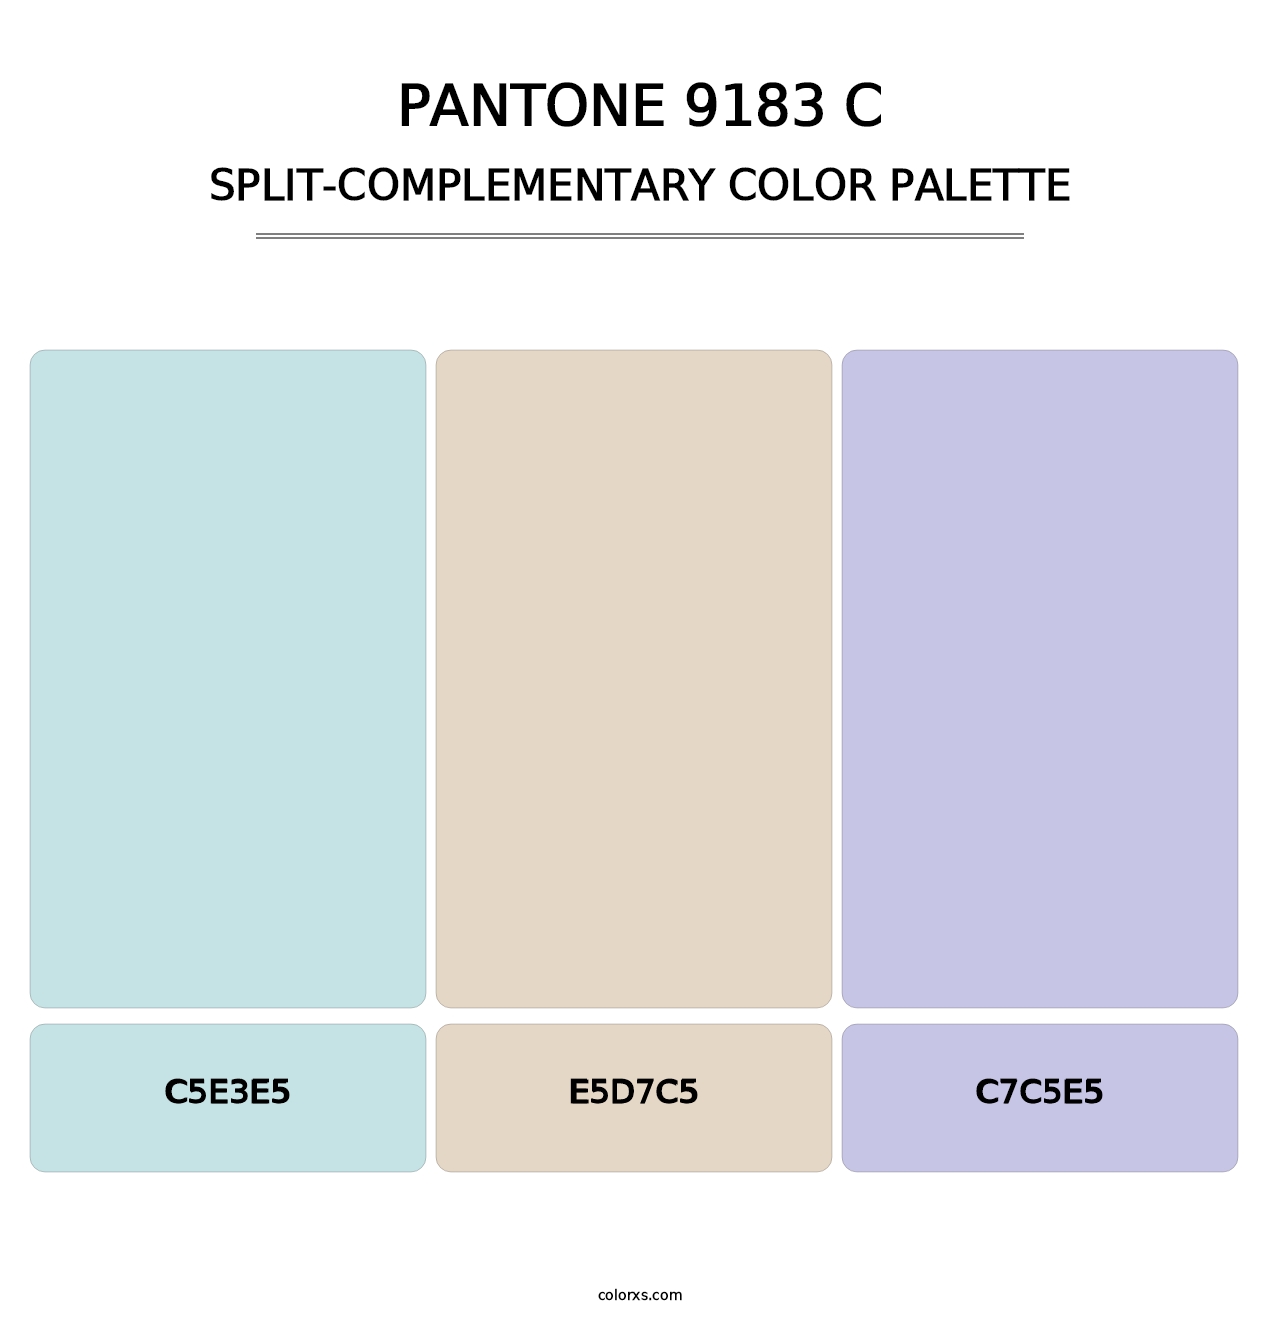 PANTONE 9183 C - Split-Complementary Color Palette